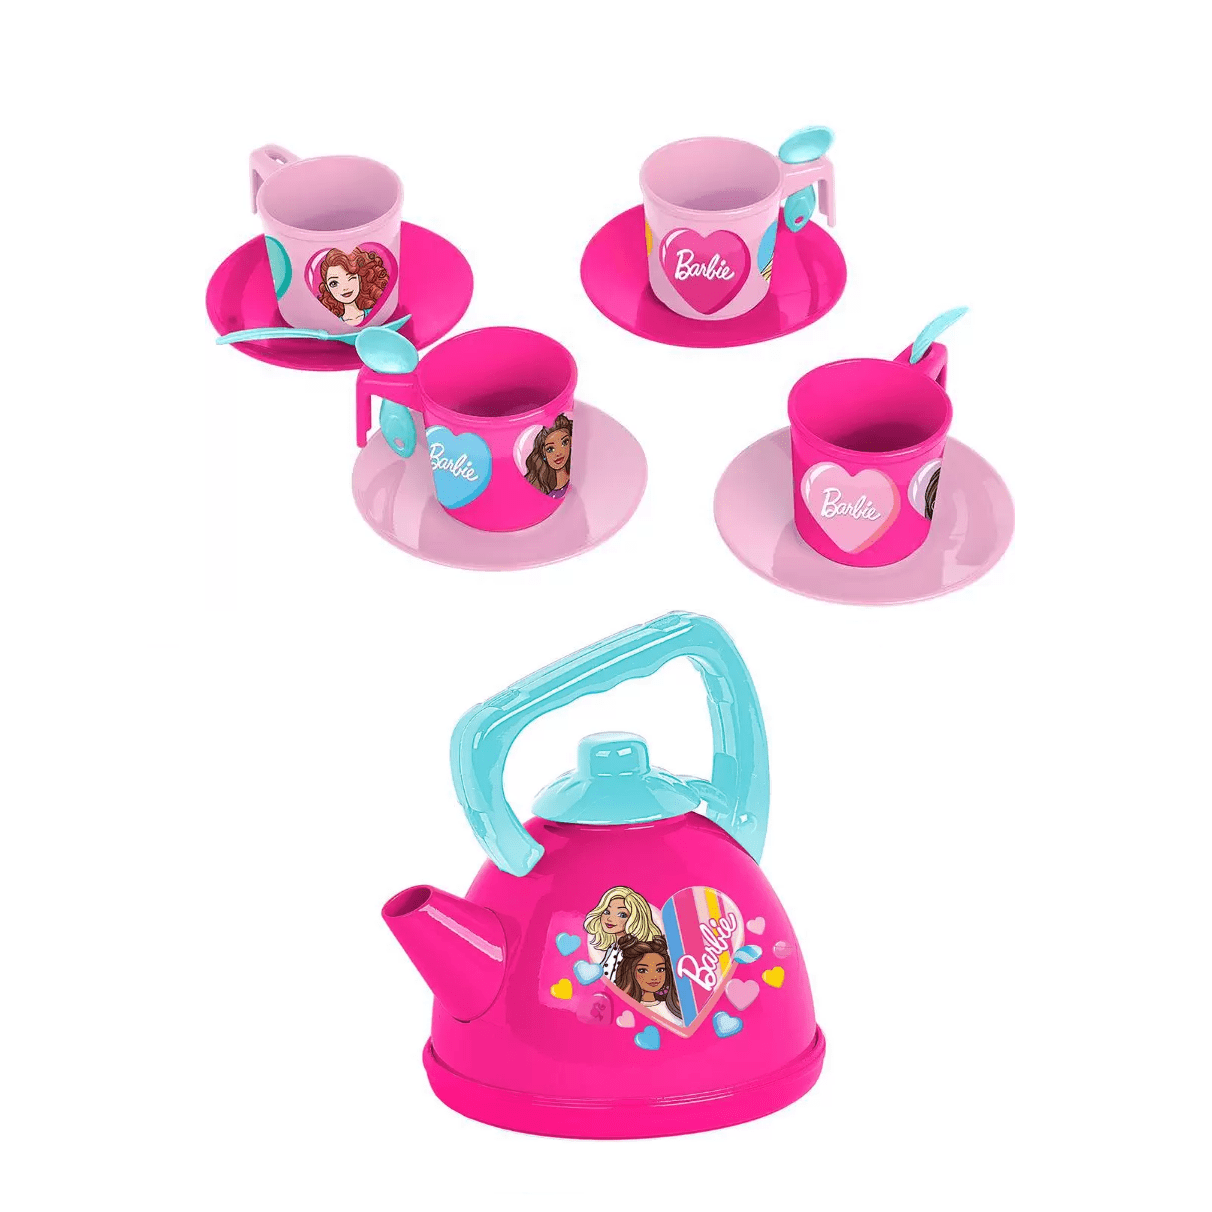 Kit Jogo de Chá Princesa Disney - Muda de Cor - Kit Jogo de Chá